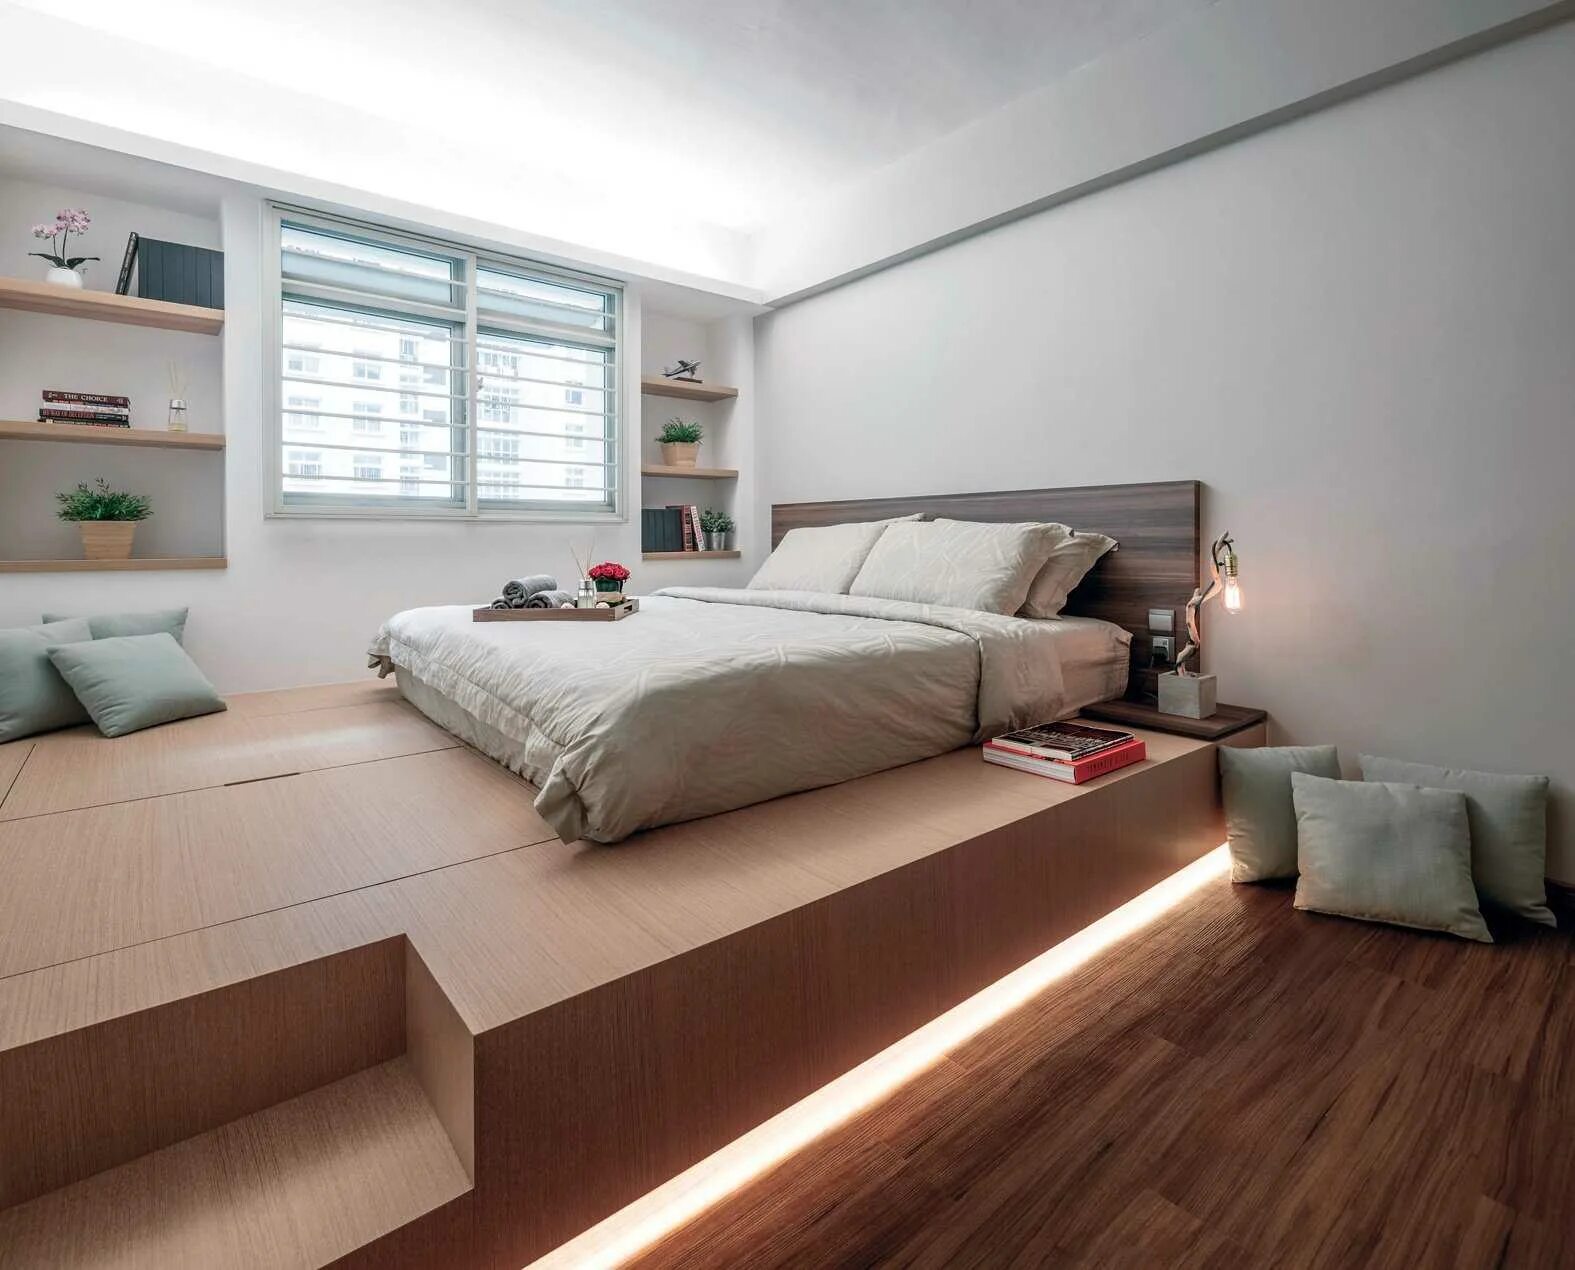 Дизайн подиум. Кровать подиум. Подиум кровать в спальне. Дизайнерская спальня. Кровать на подиуме в интерьере.